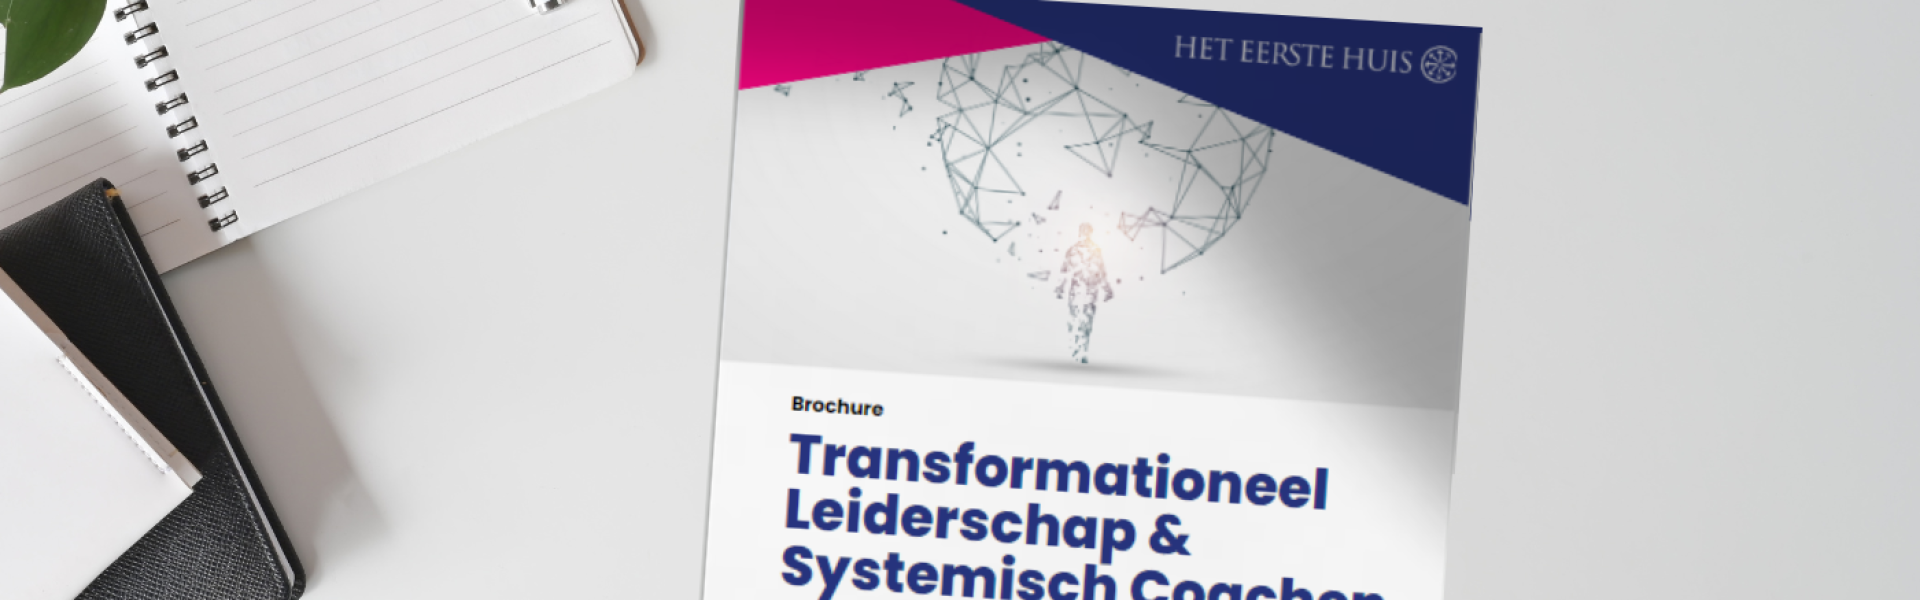 brochure-transformationeel-leiderschap-en-systemisch-coachen